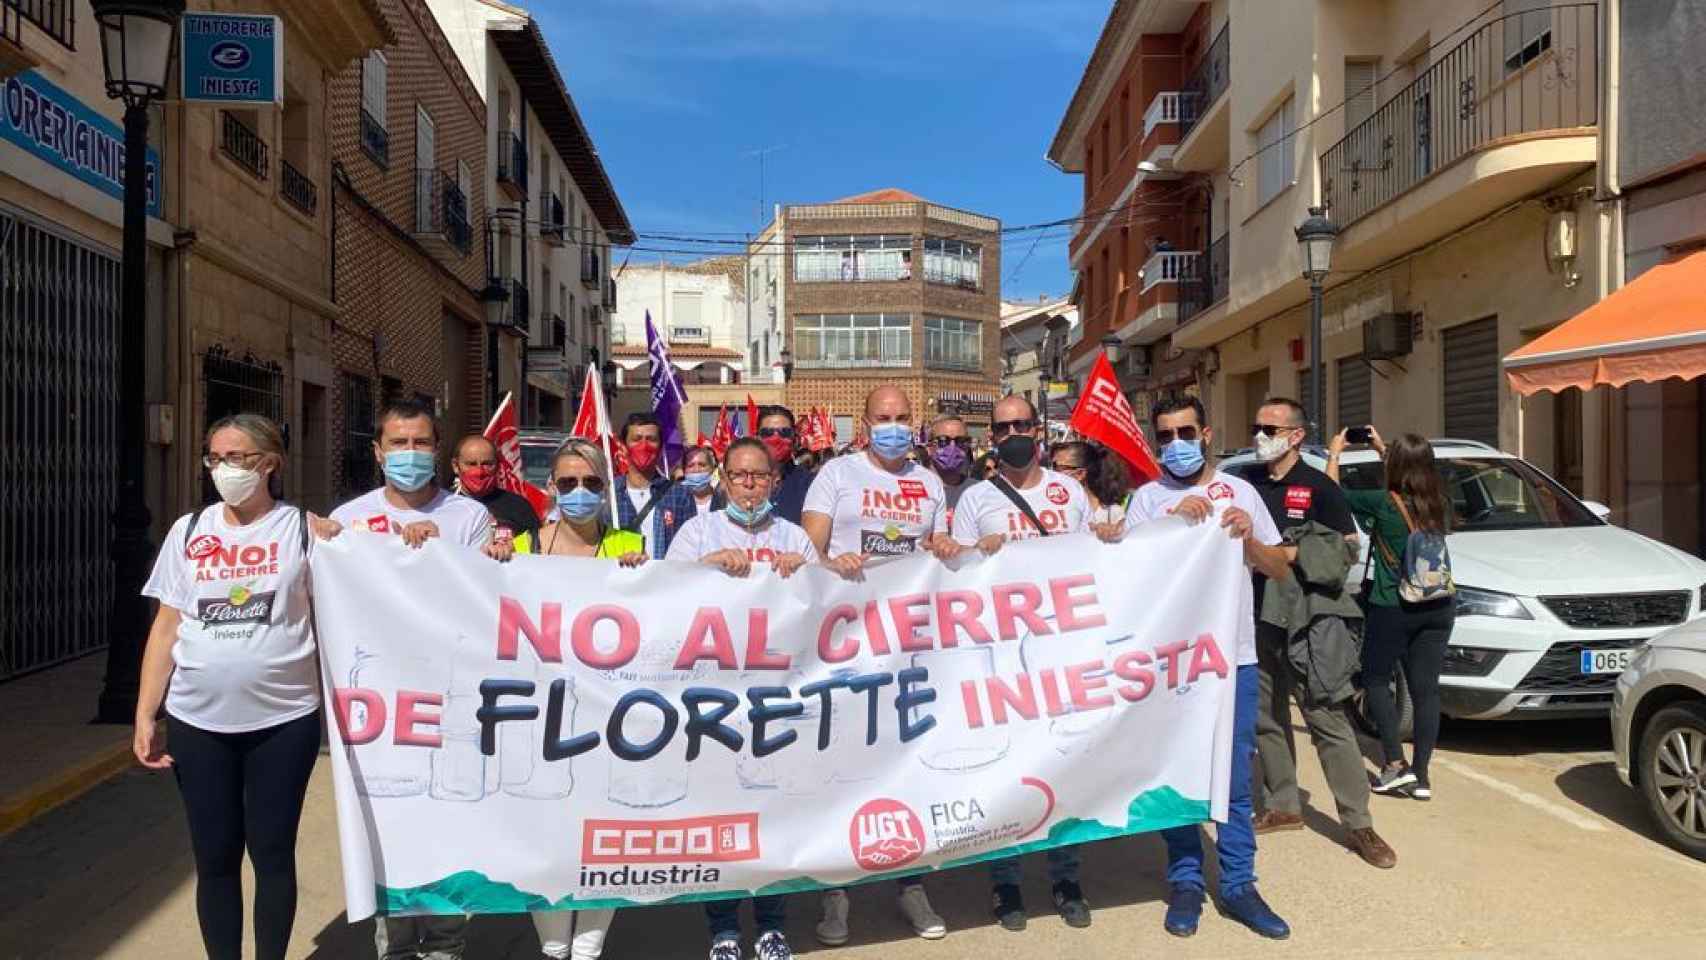 Protesta contra el cierre de Florette